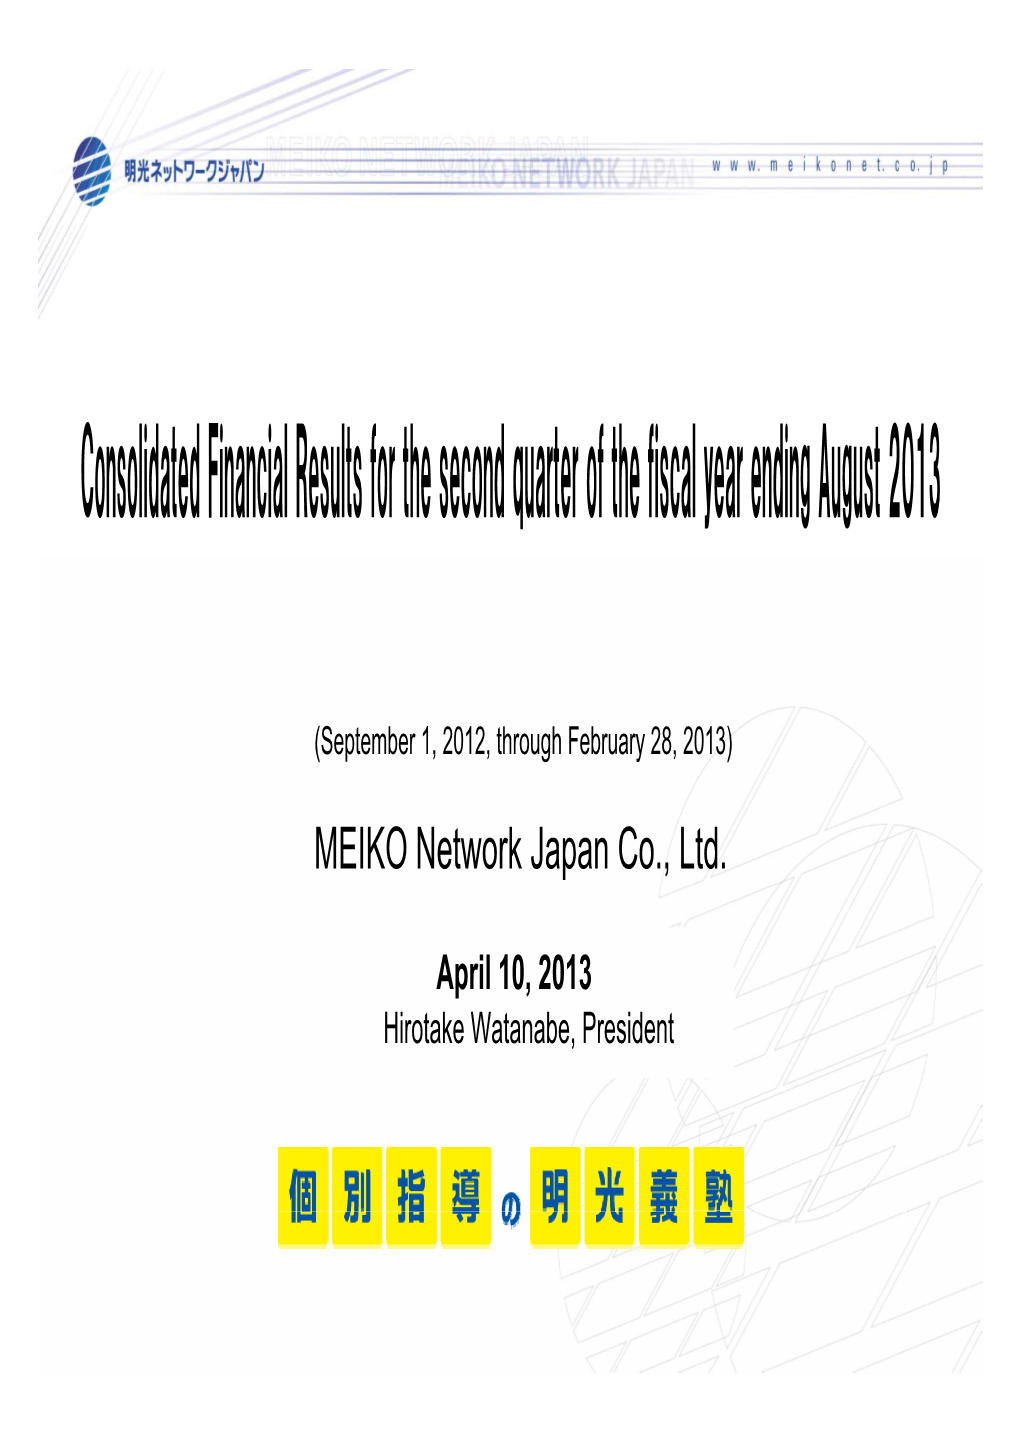 MEIKO Network Japan Co., Ltd